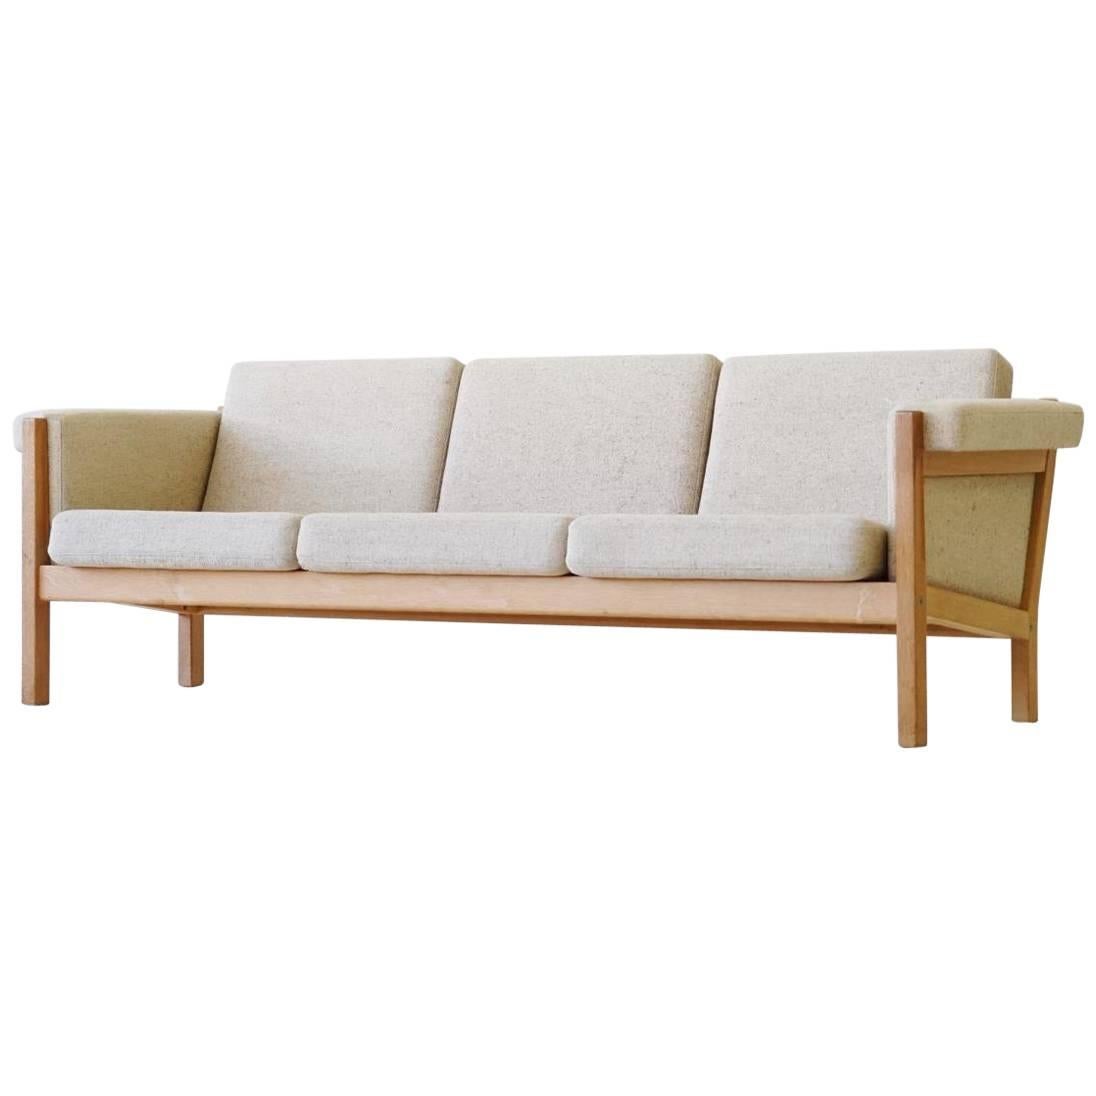 Three-Seat Sofa by Hans J. Wegner for GETAMA Model GE-40 Oak